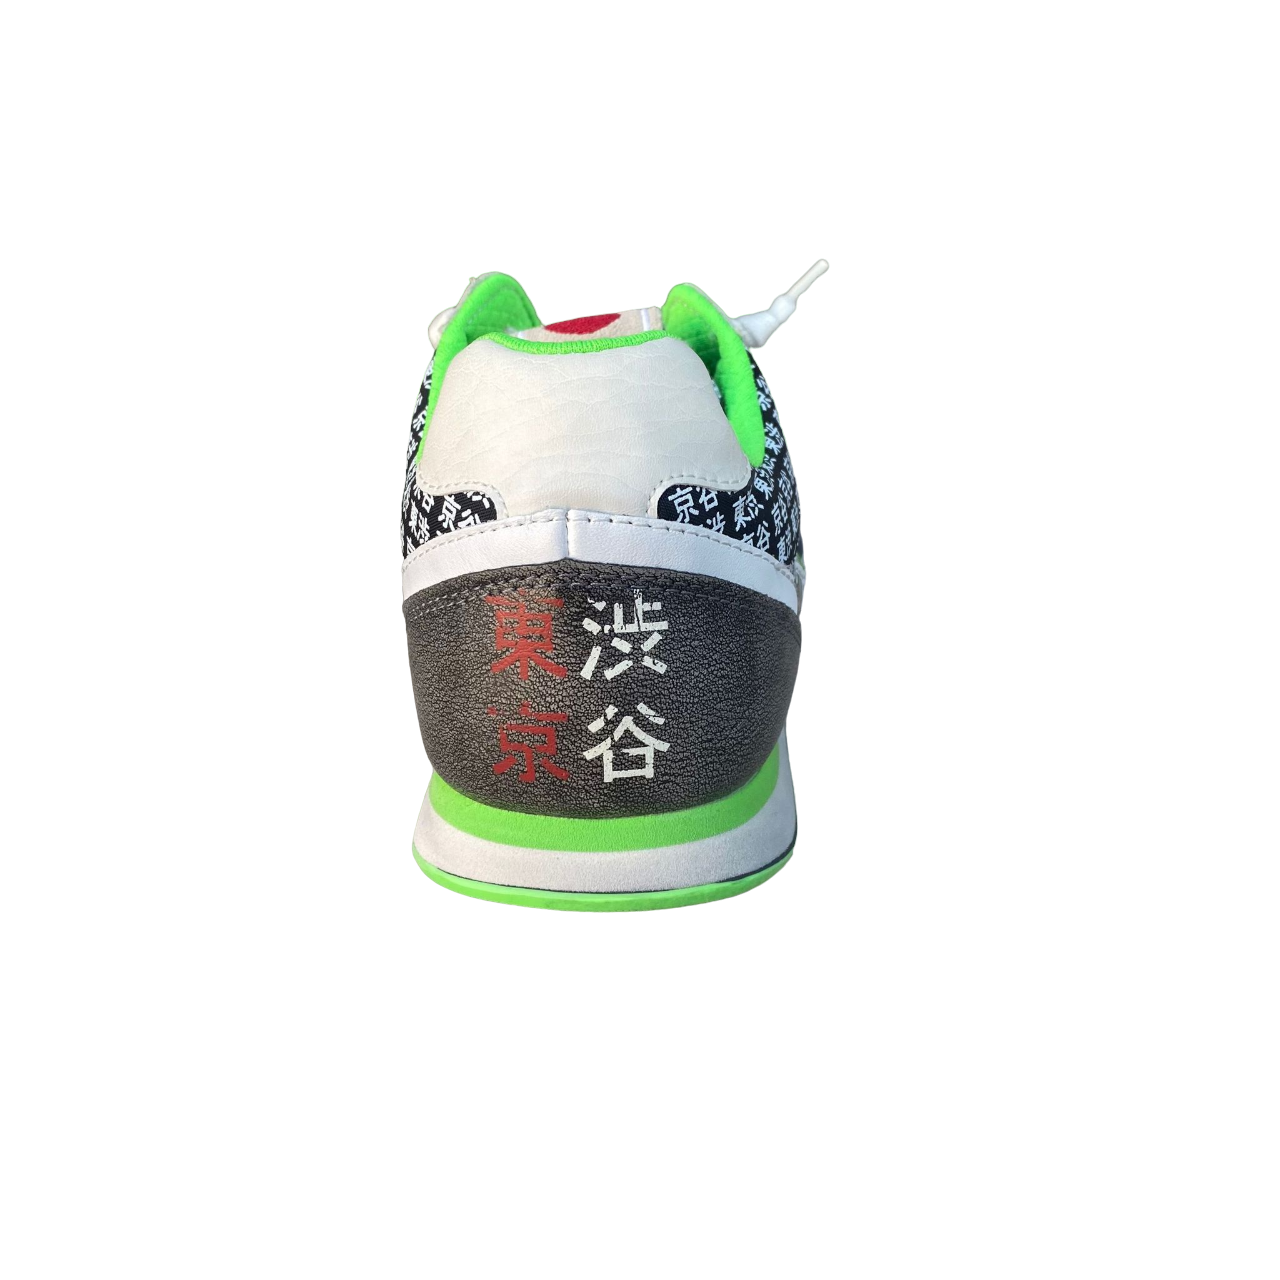 Lotto Leggenda sneakers da uomo Tokyo Shibuya R7088 bianco